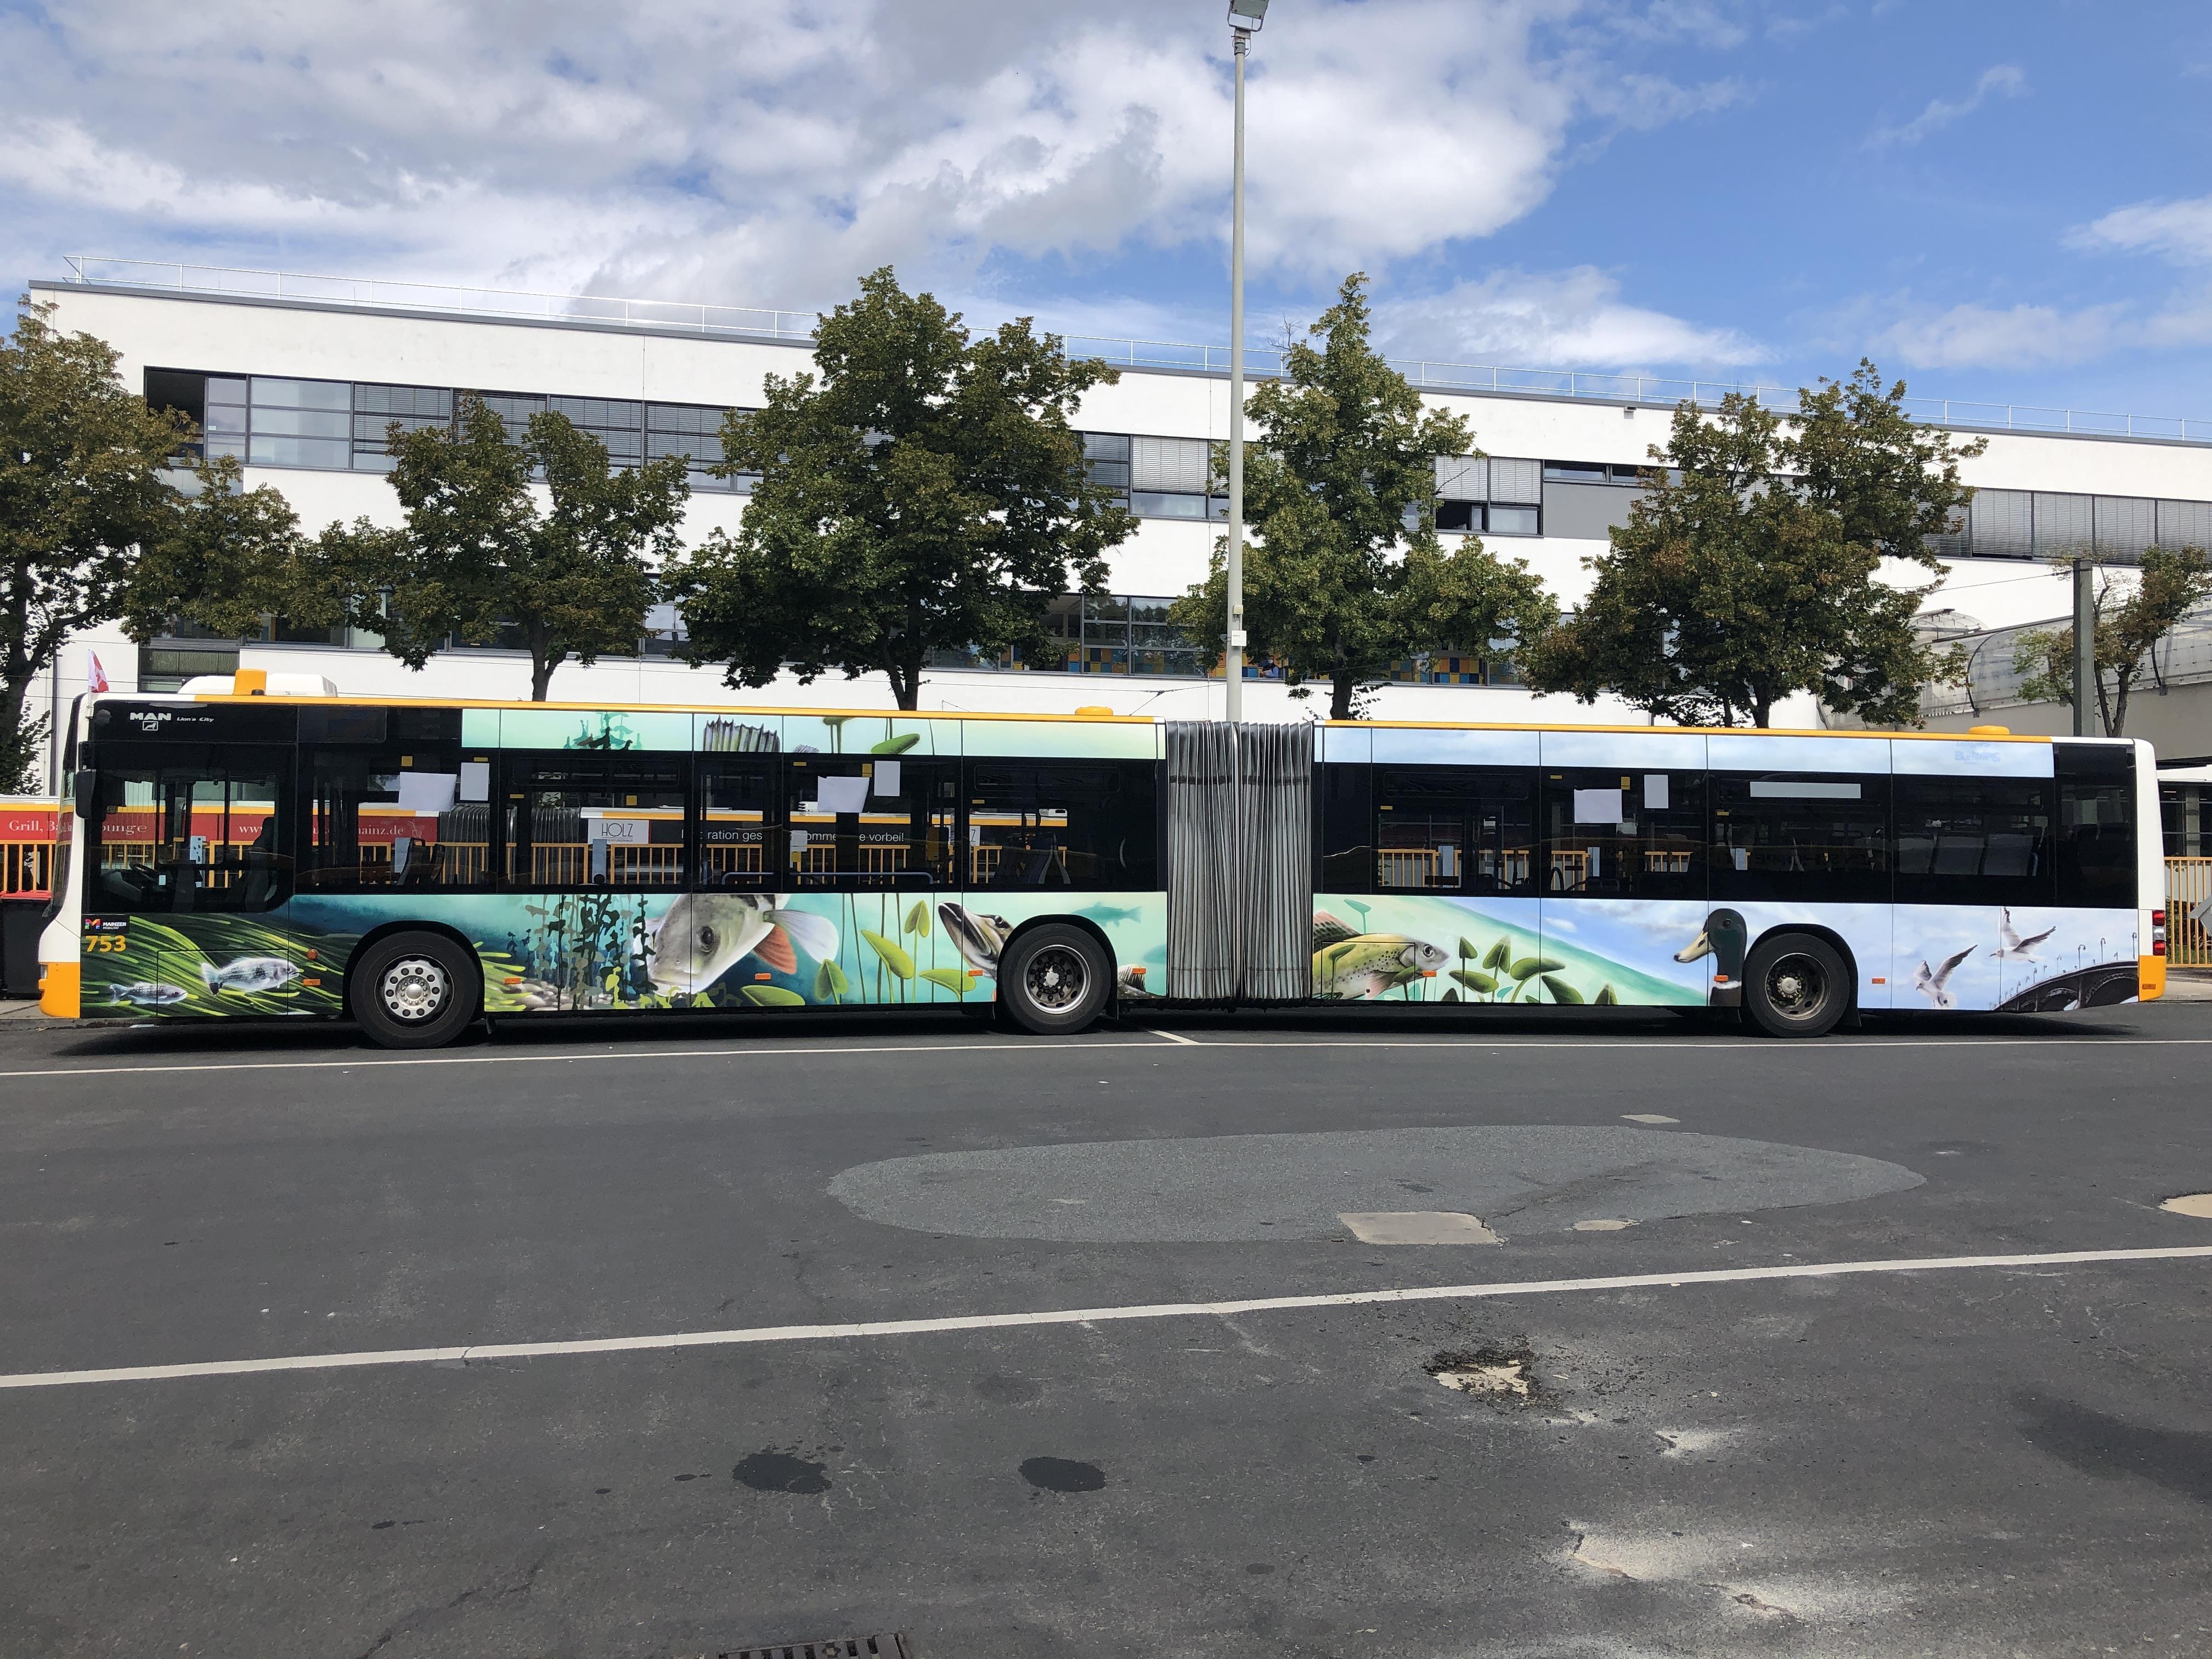 Graffiti Bus